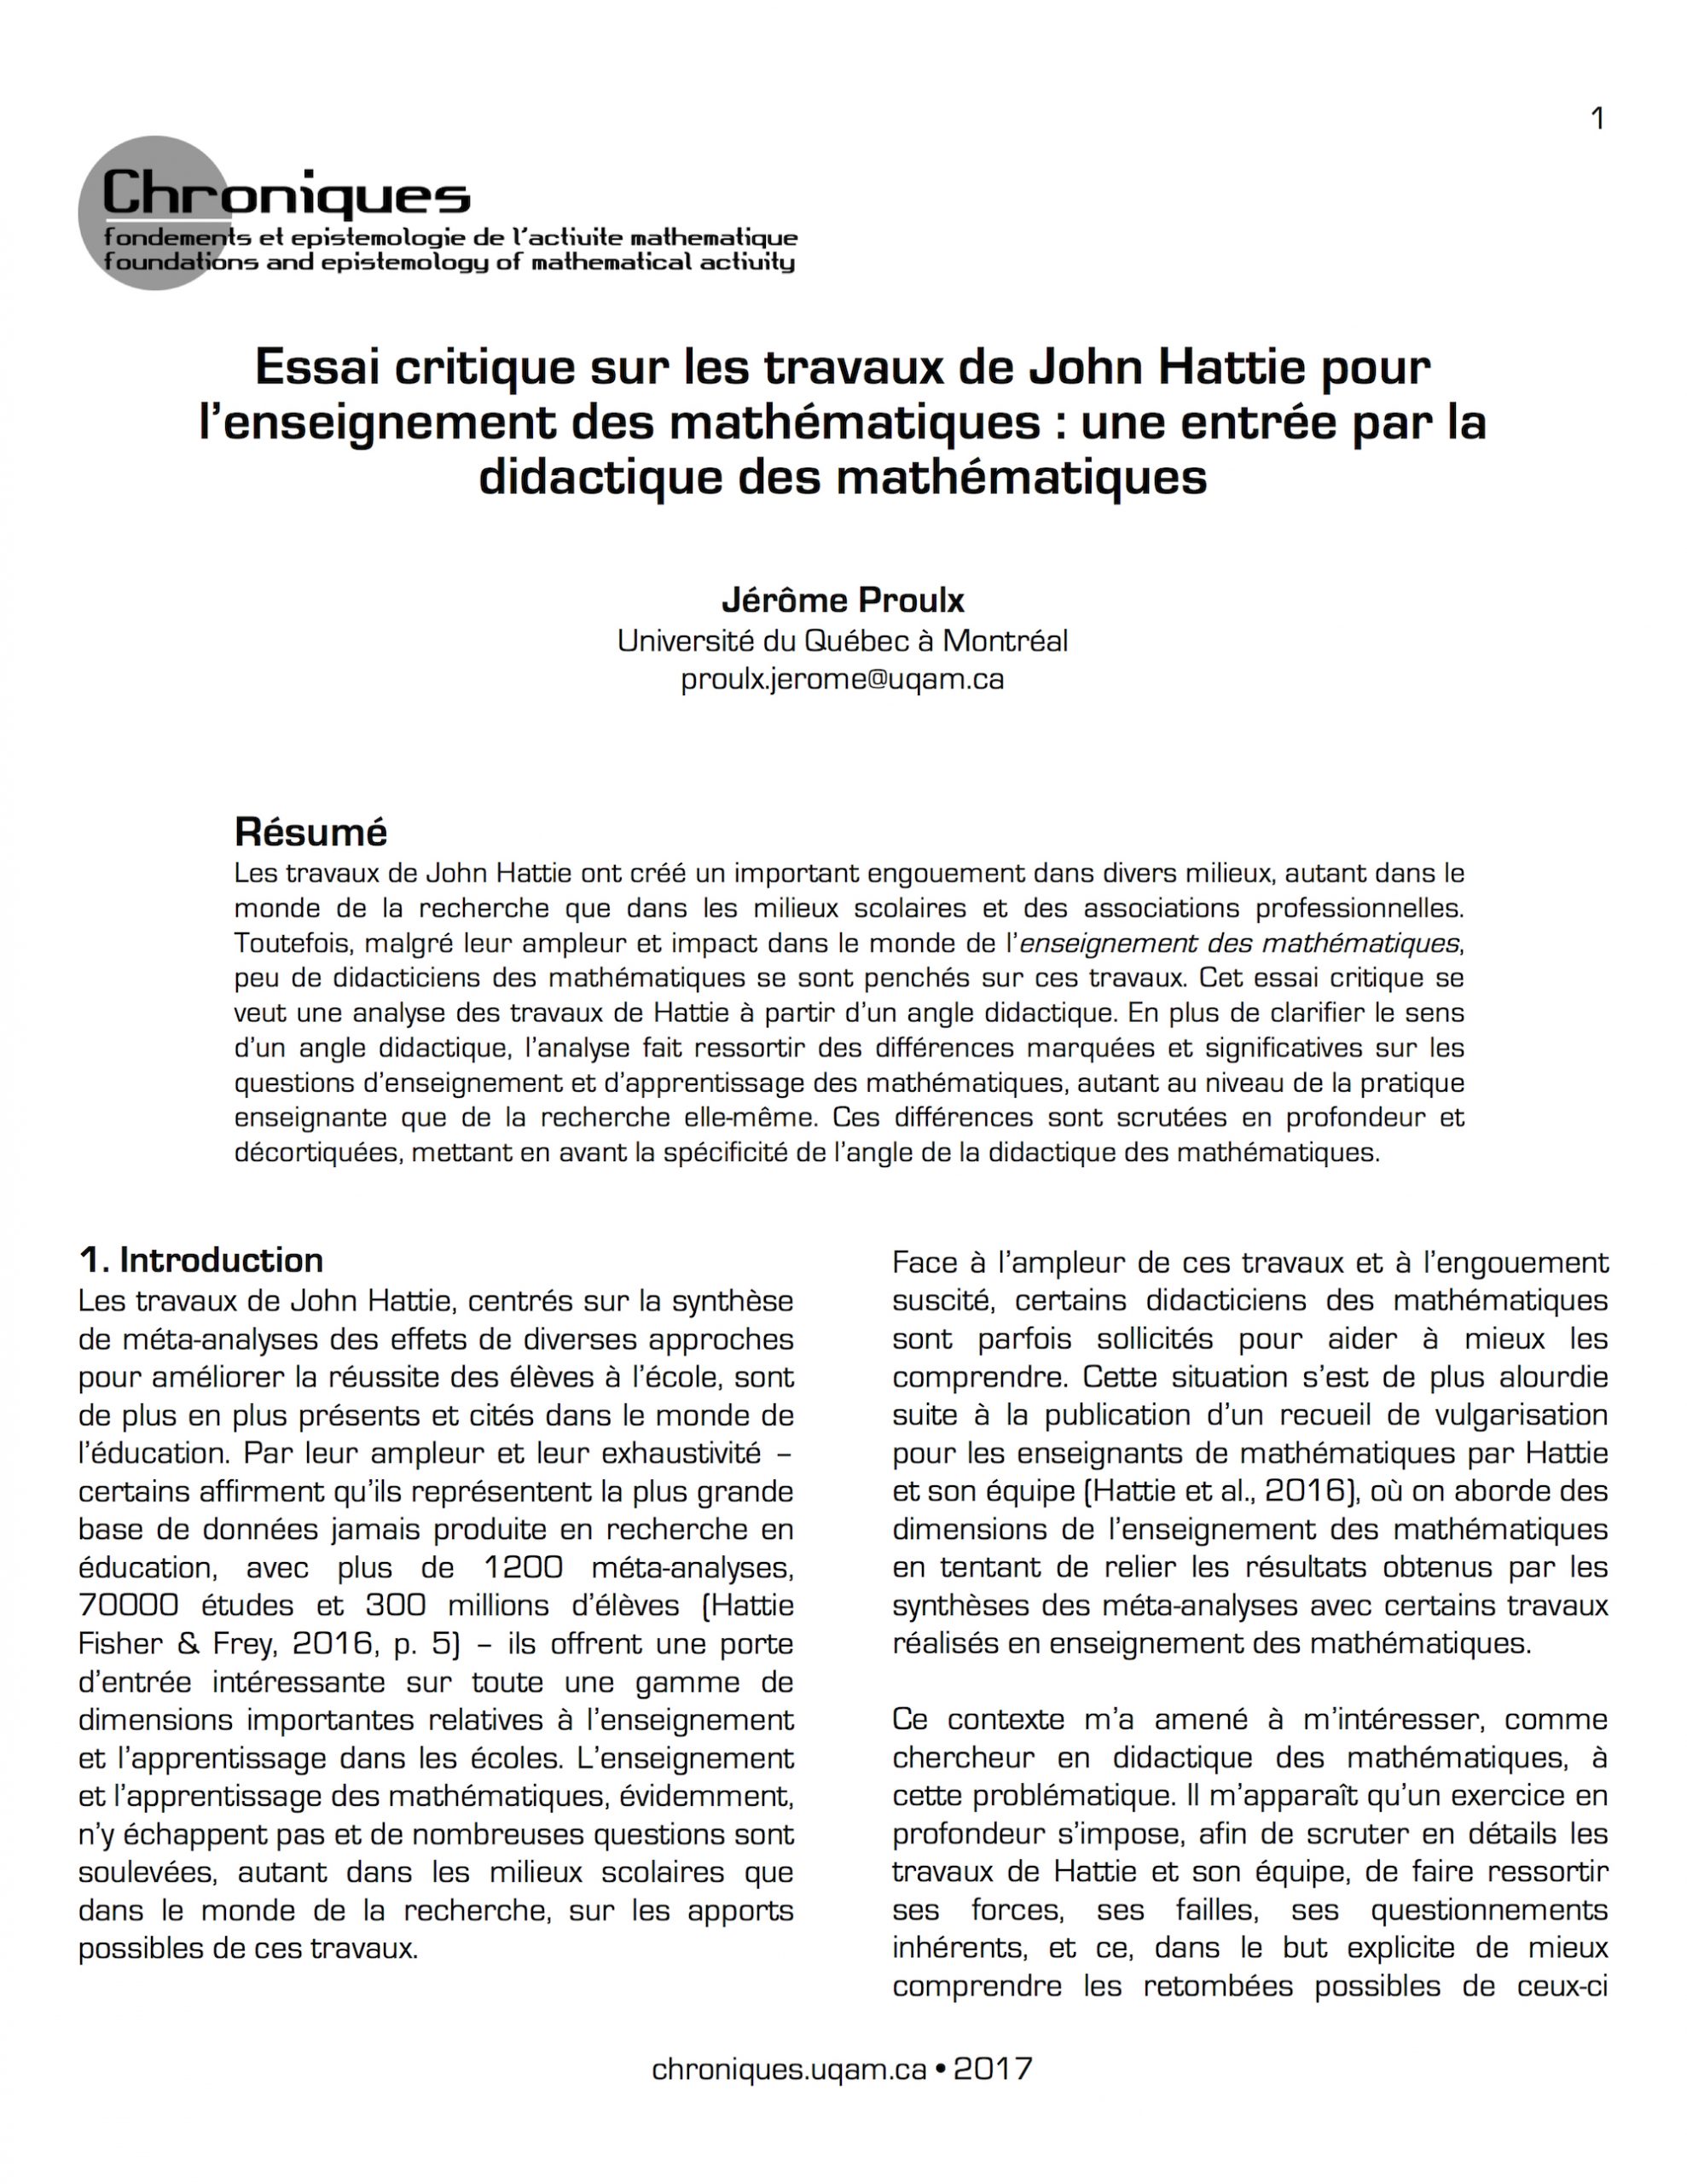 Essai critique sur les travaux de John Hattie pour l’enseignement des mathématiques : une entrée par la didactique des mathématiques 